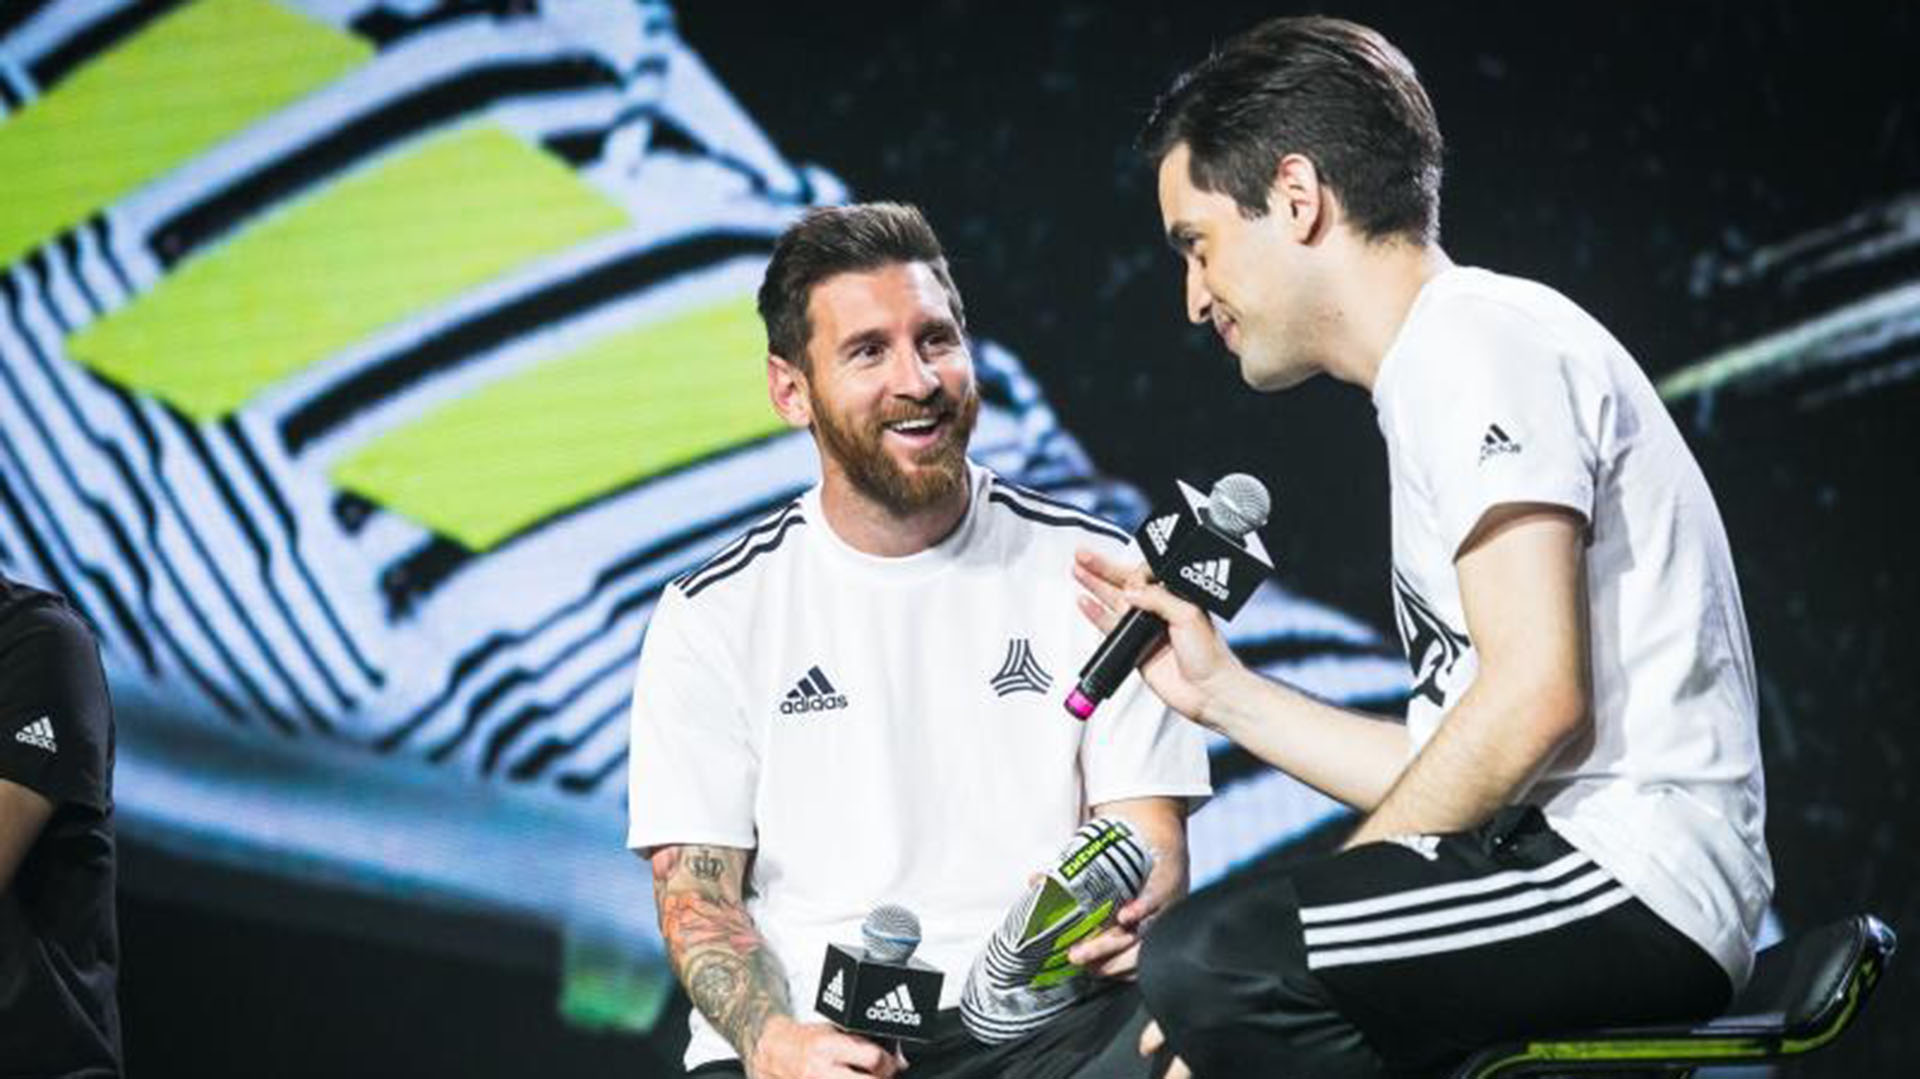 Fue intérprete de Lionel Messi cuando el astro argentino visitó China llevado por la marca que lo patrocina